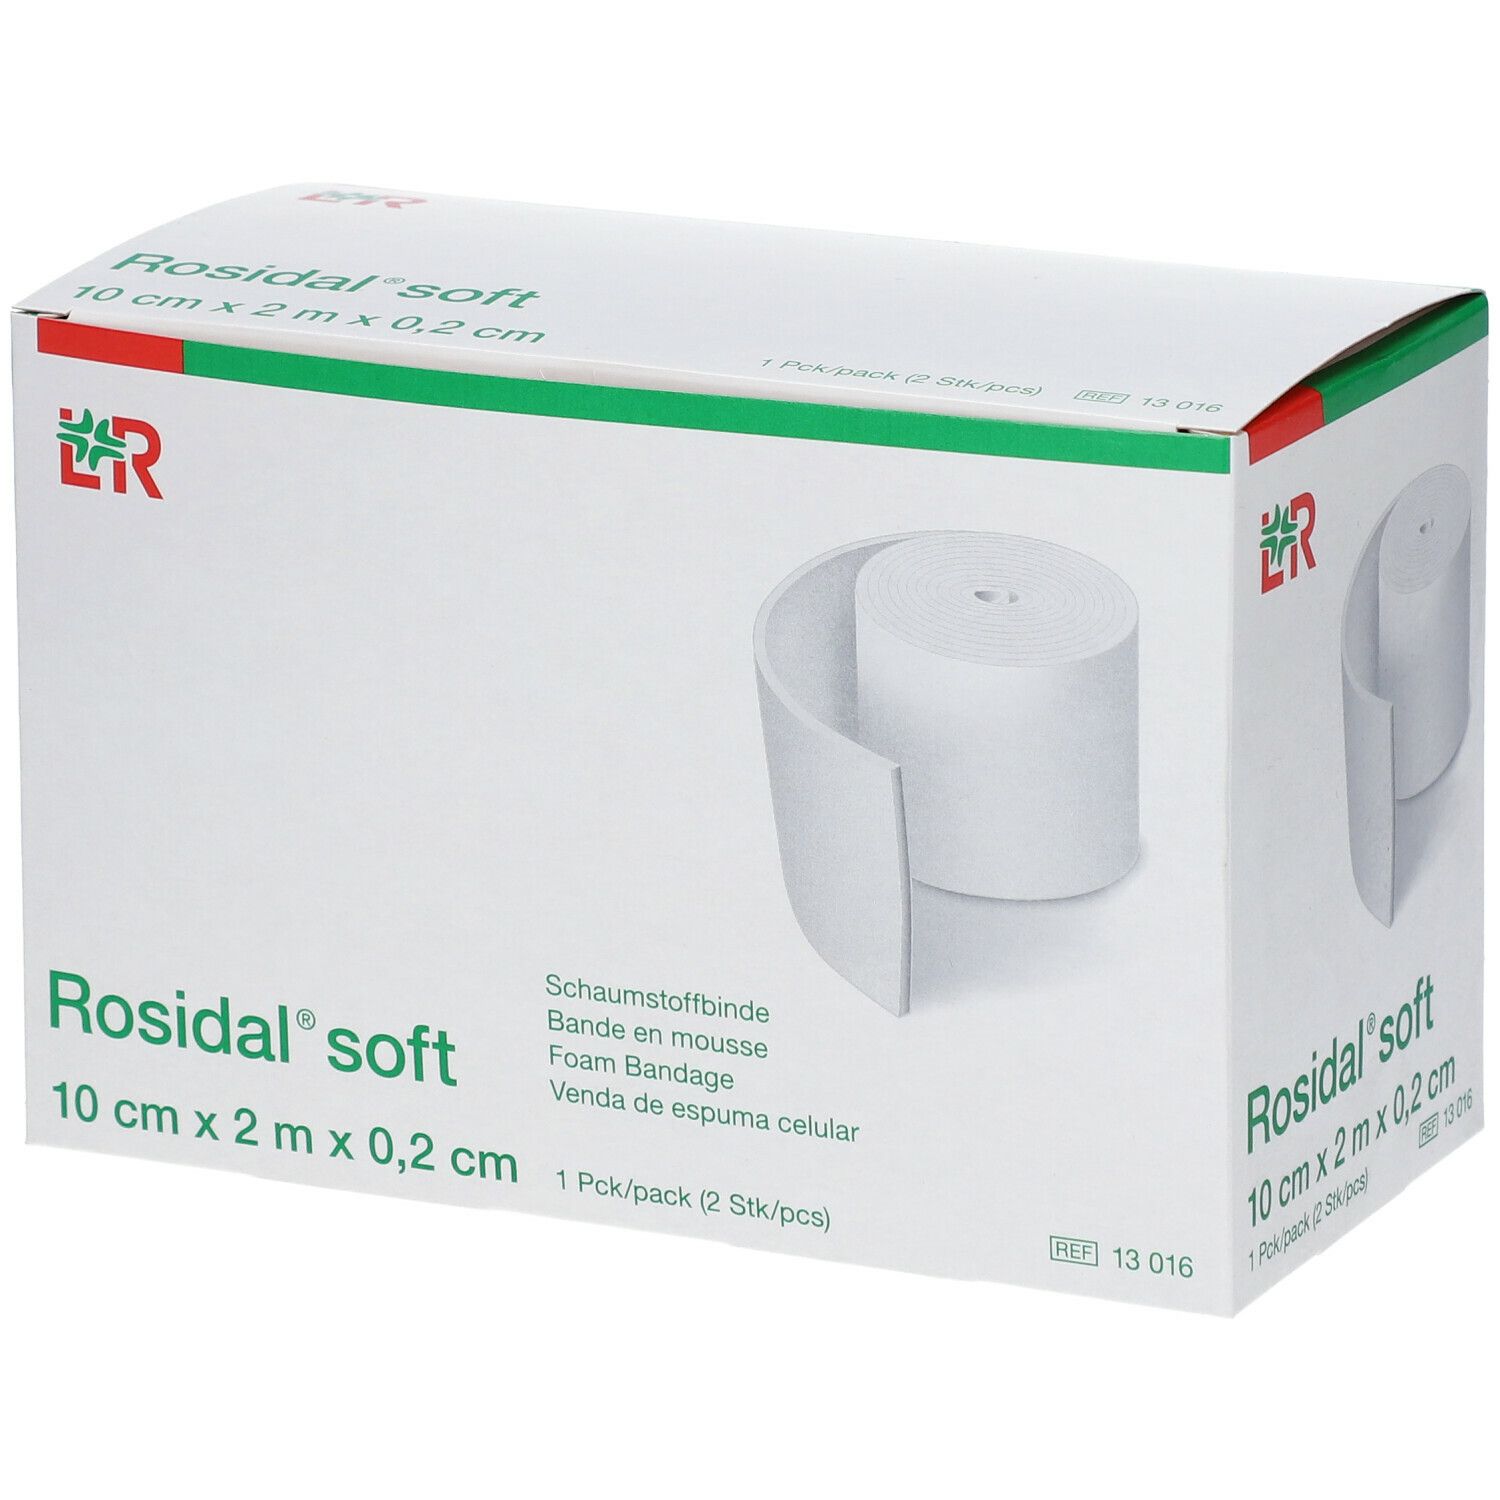 Lohmann & Rauscher Rosidal® Soft 10 cm x 0,2 cm x 2 m